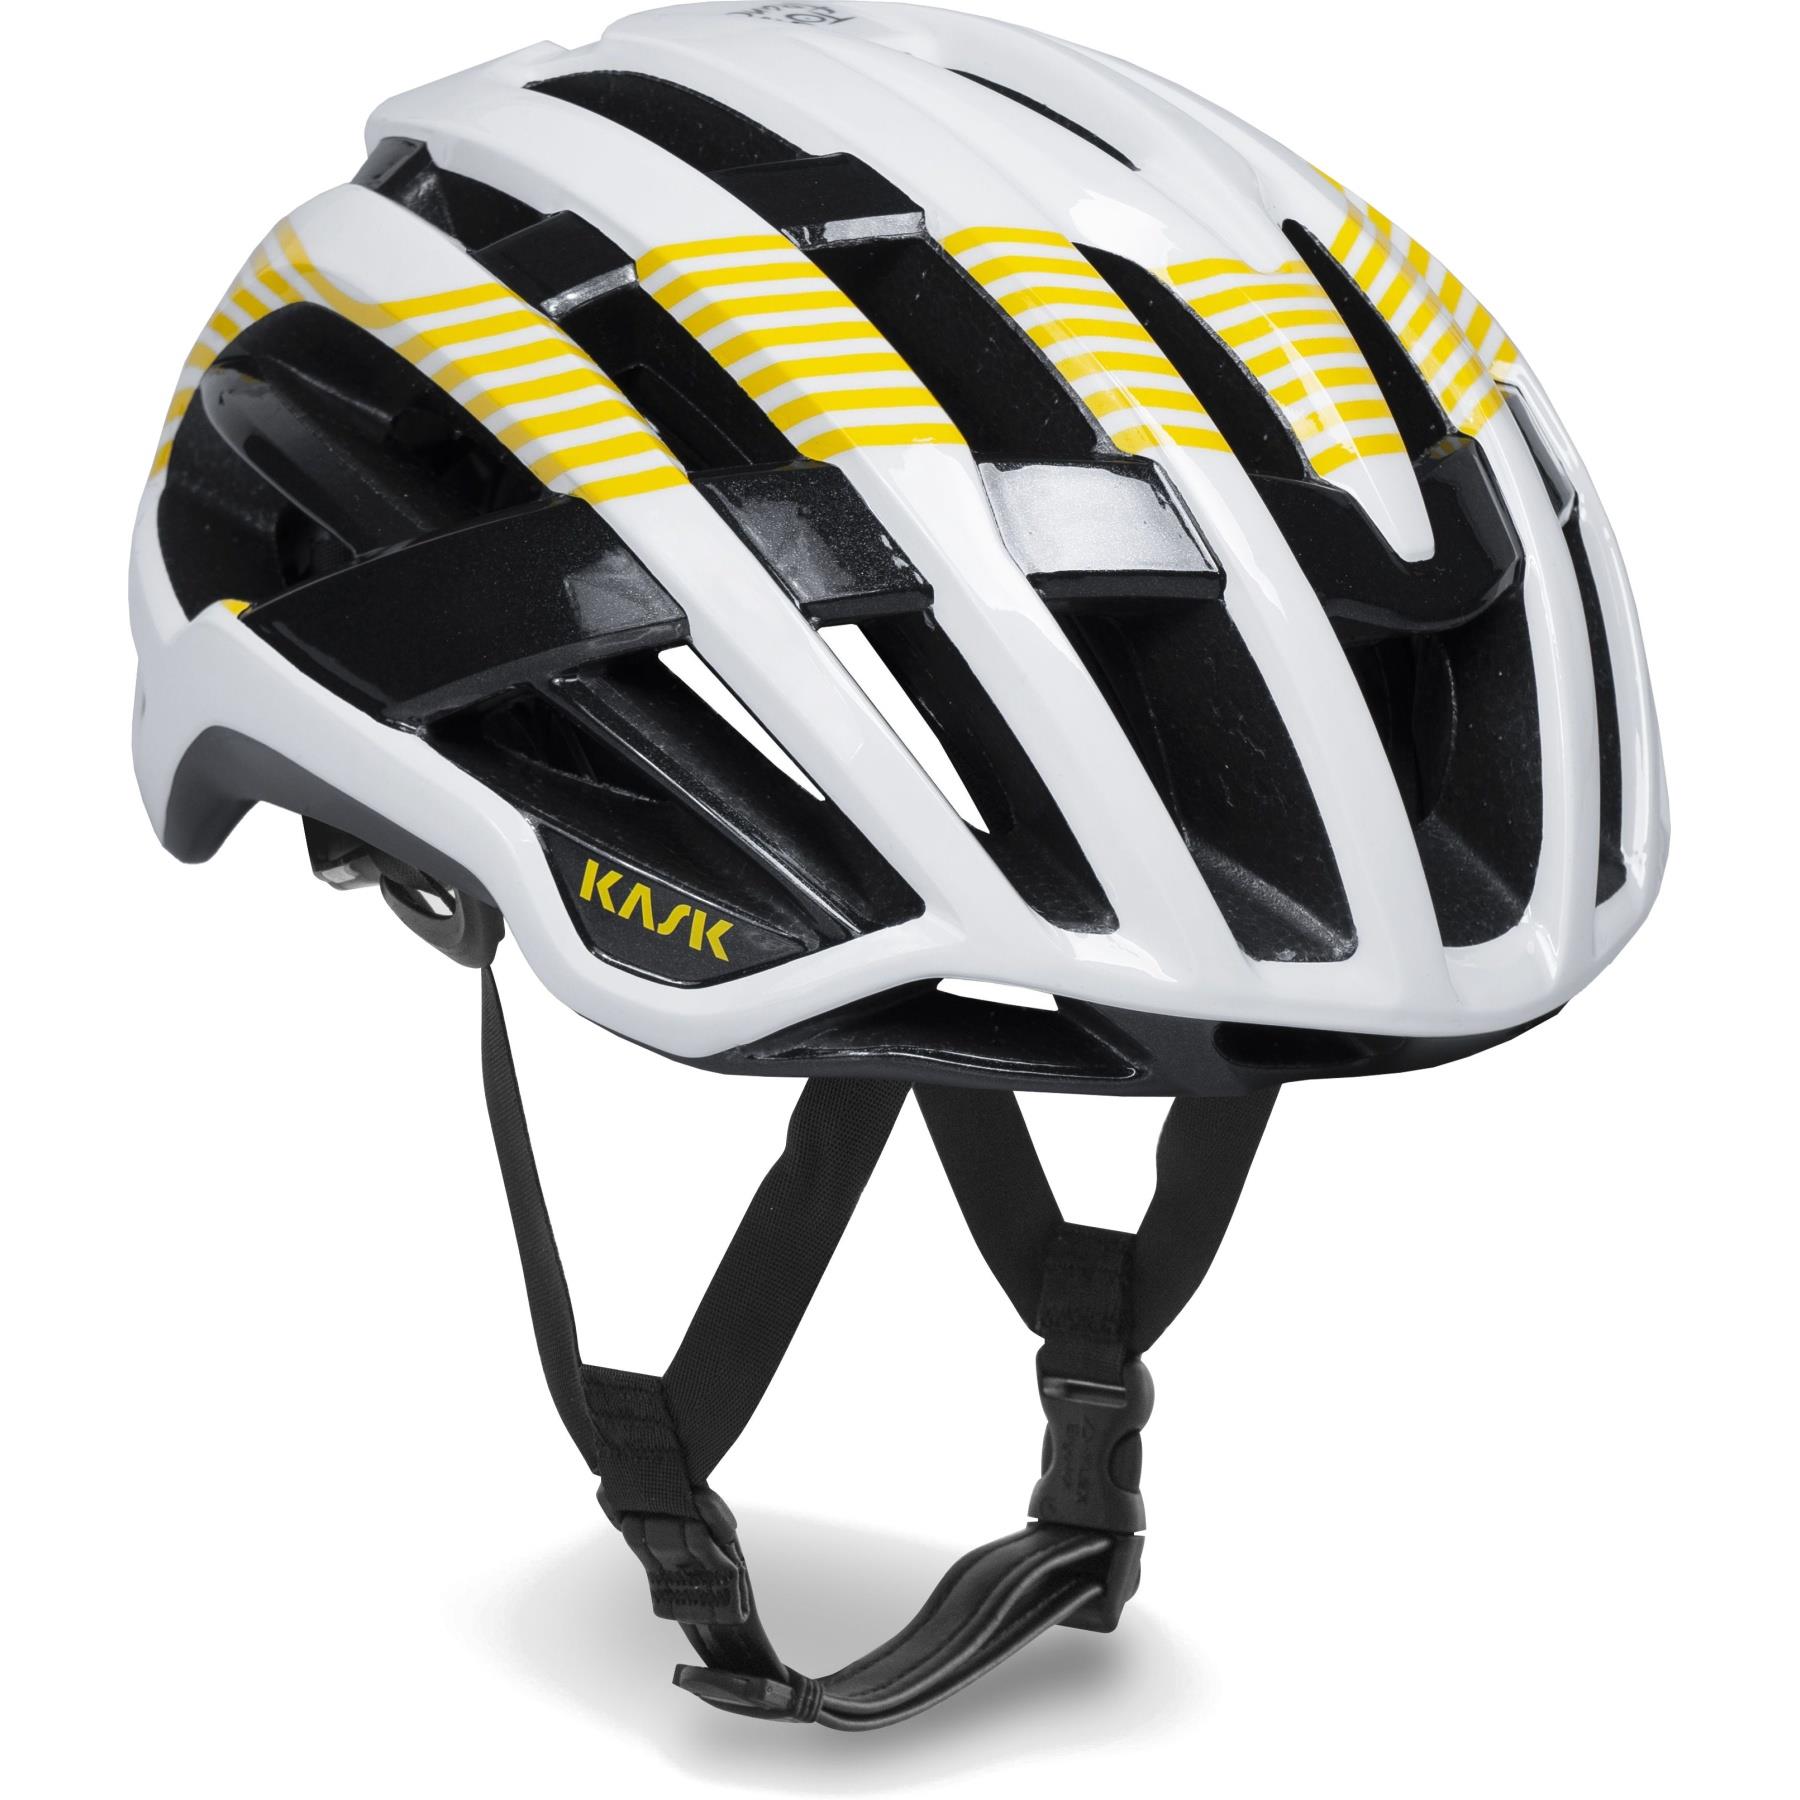 Kask Valegro Tour de France Limited Edition Bisiklet Kaskı